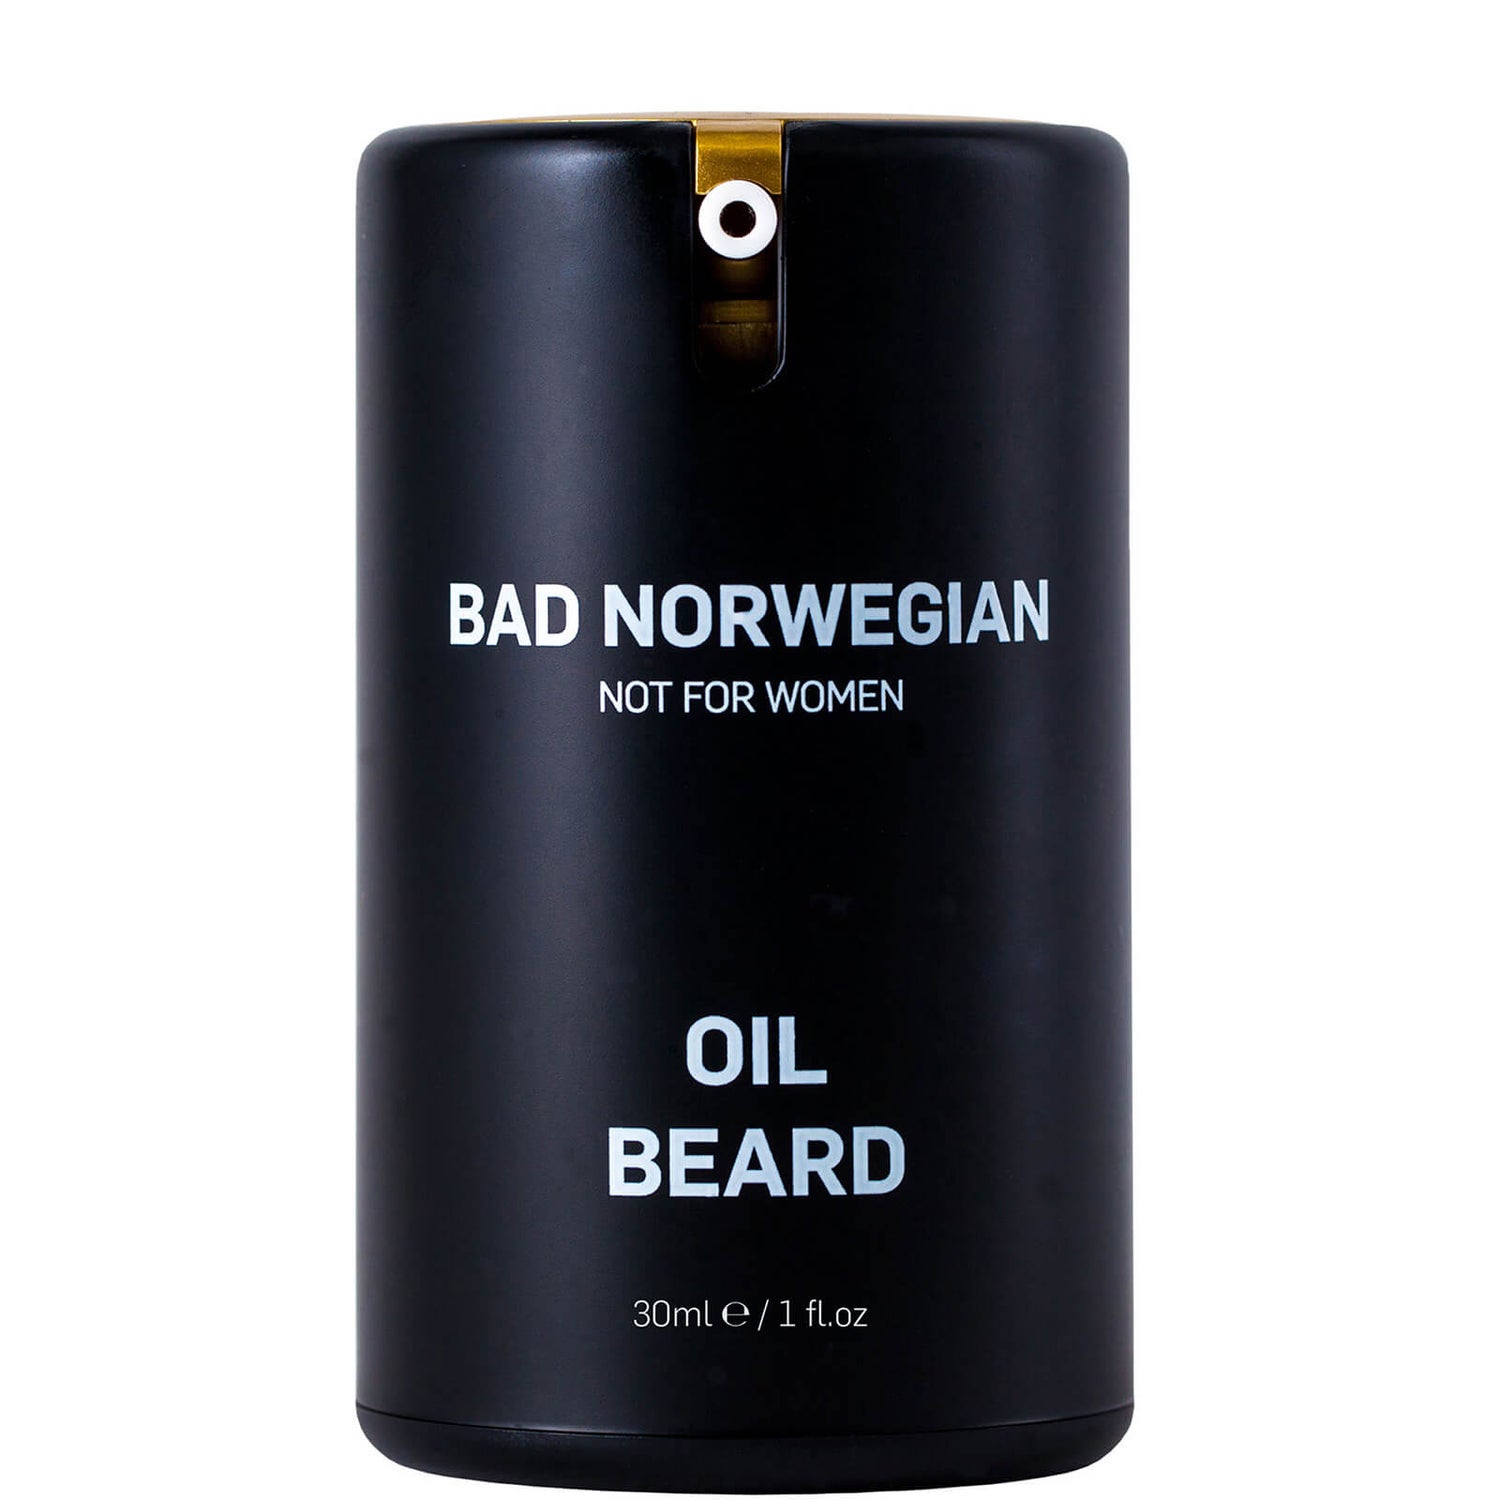 BAD NORWEGIAN Oil Beard